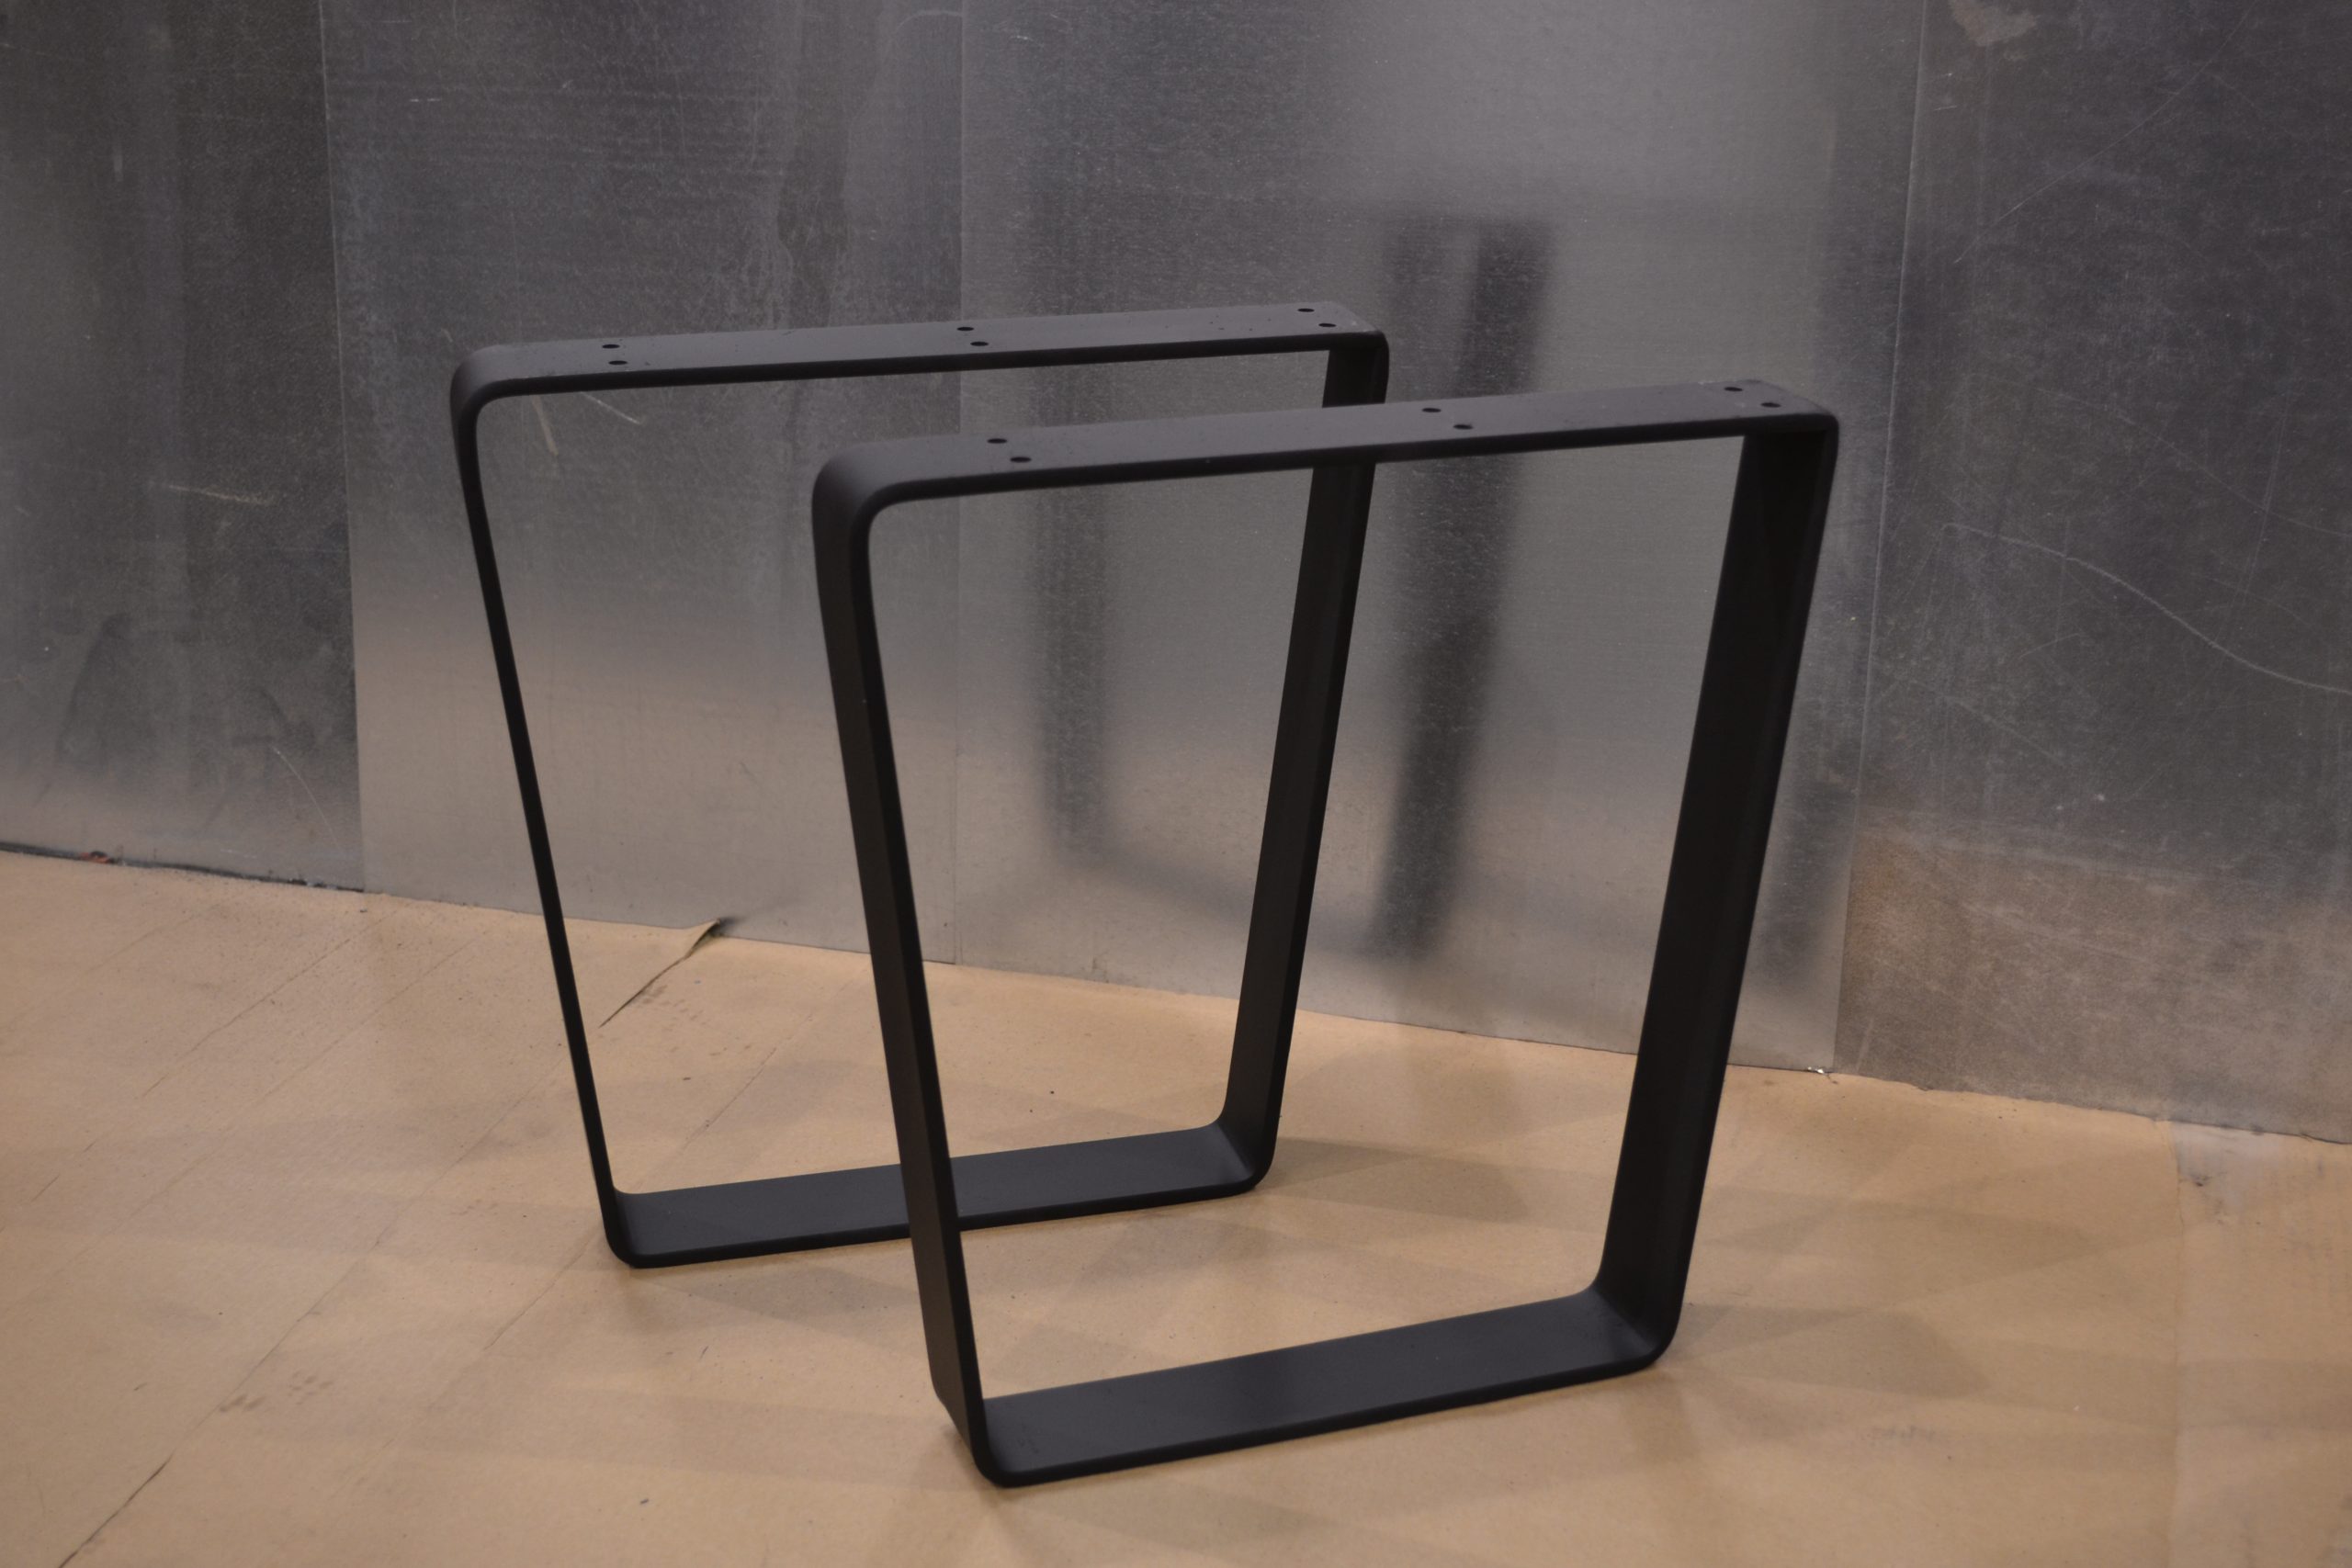 Bent Style Metal Table Legs, Metal Coffee Table Legs